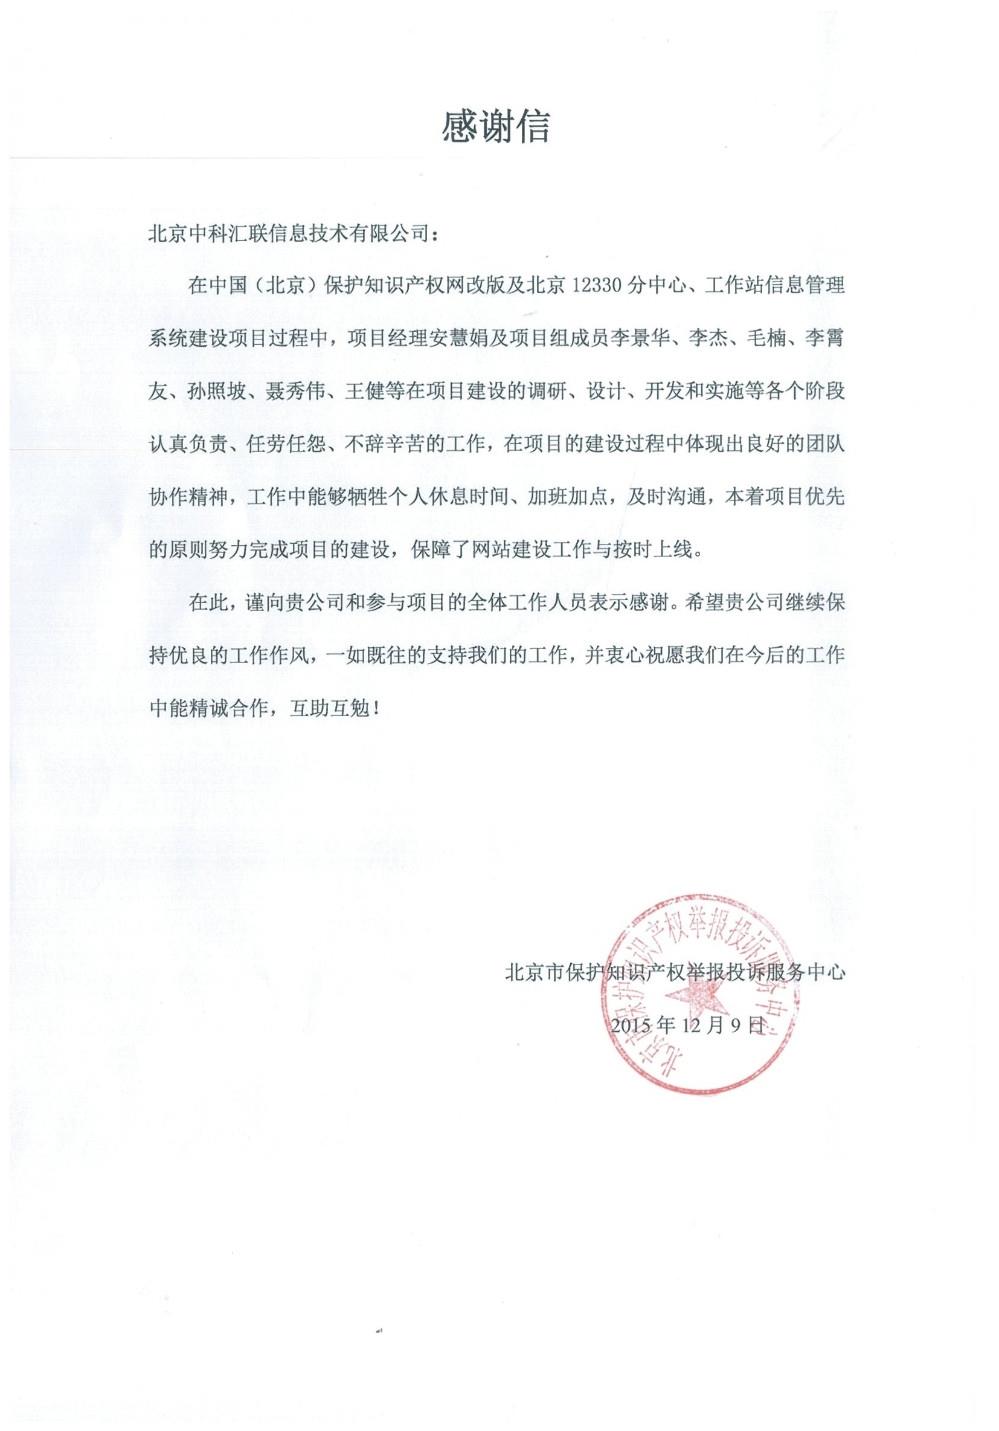 北京市保护知识产权举报投诉服务中心致中科汇联感谢信